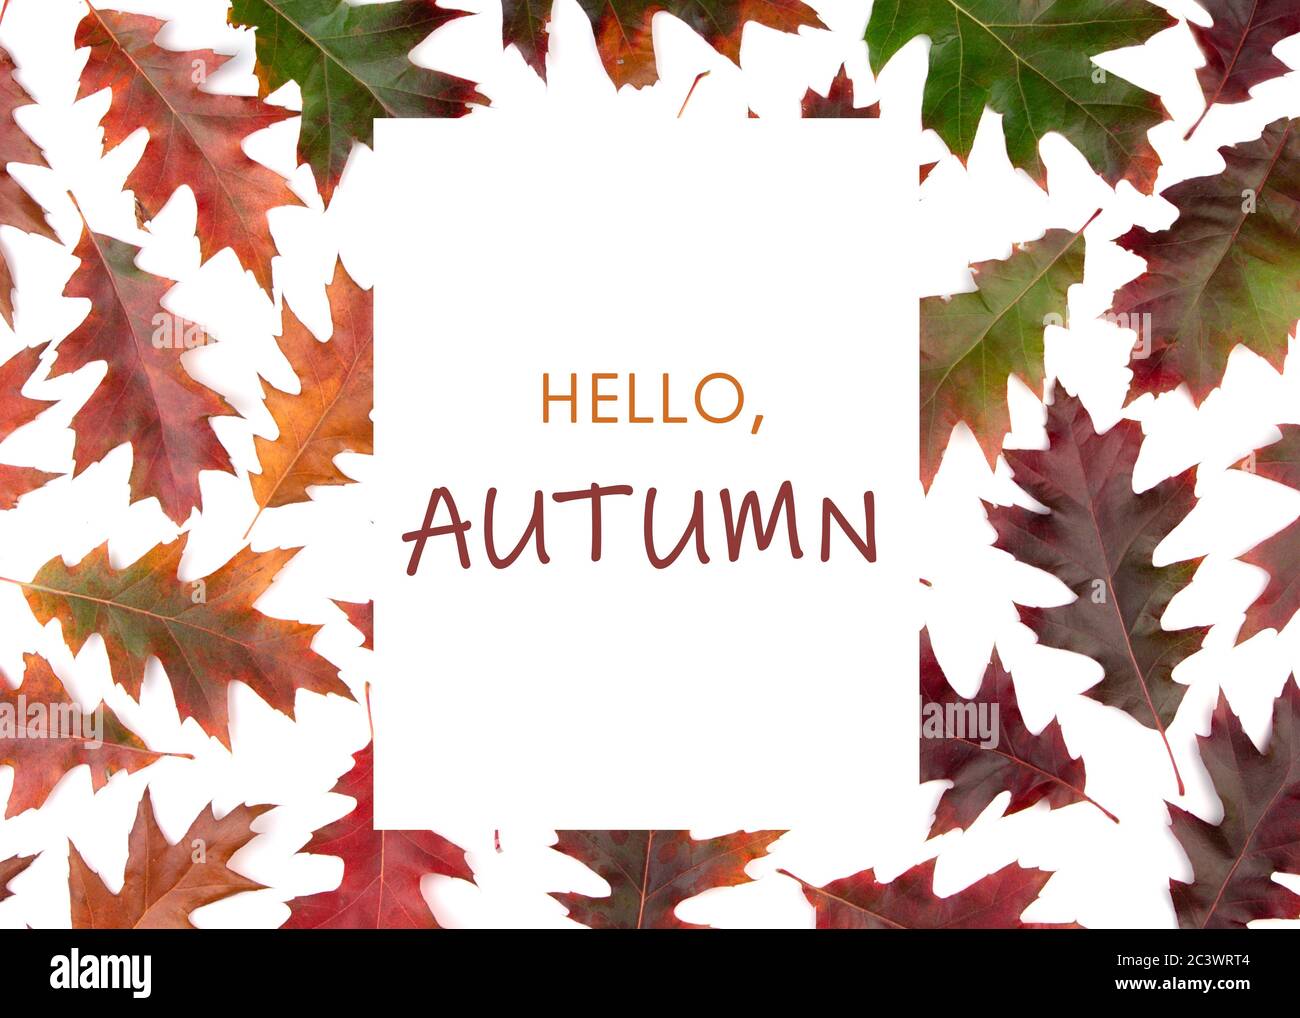 Composizione di foglie secche d'autunno su sfondo bianco. Cornice per testo Ciao autunno. Foto Stock